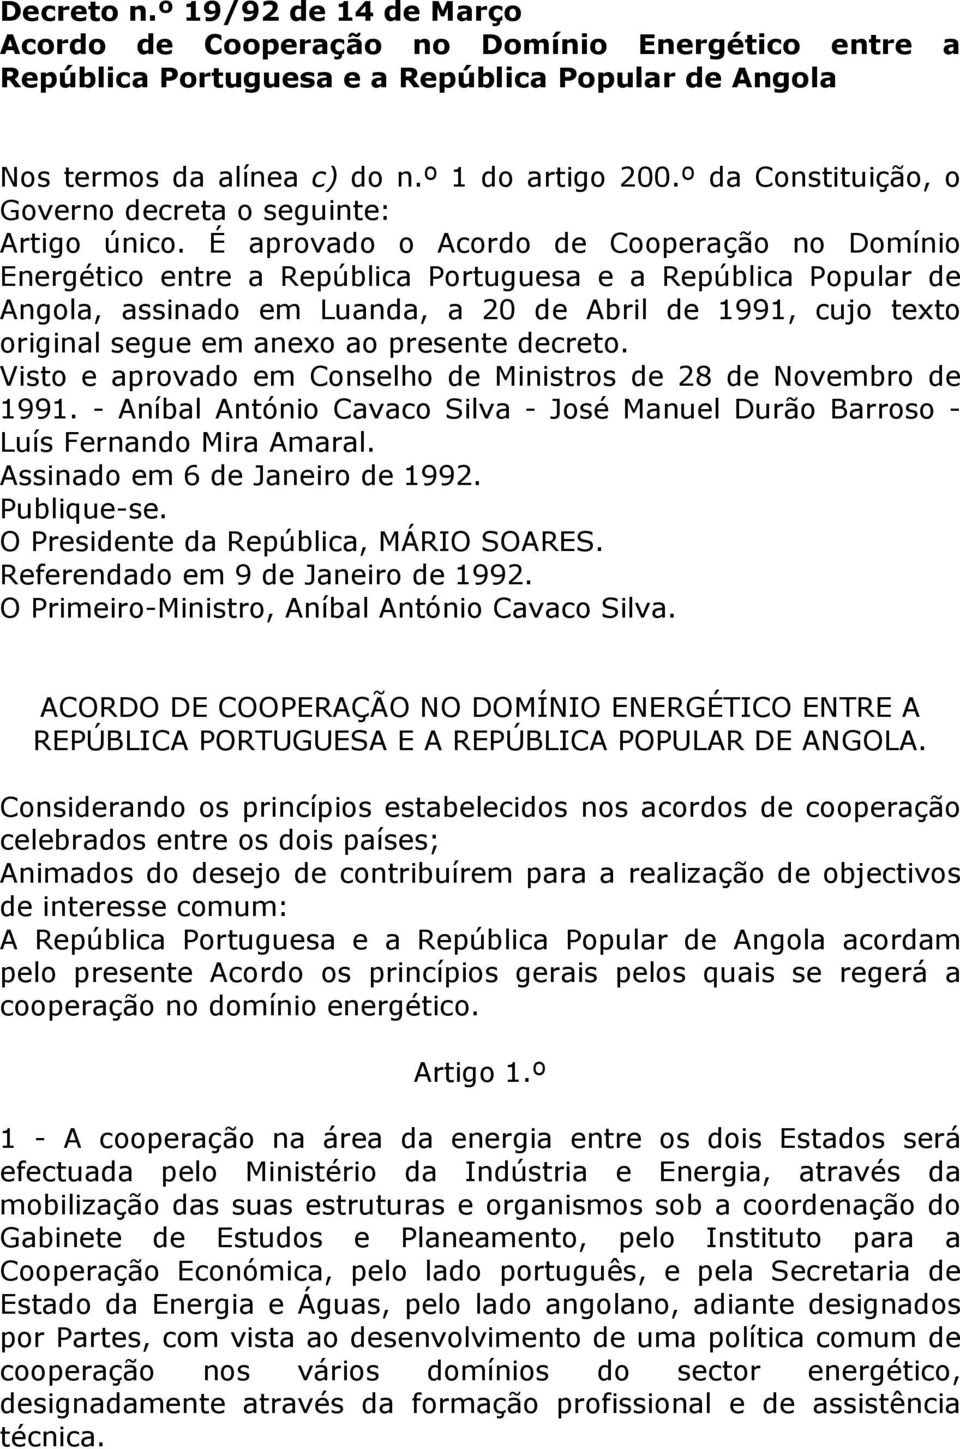 É aprovado o Acordo de Cooperação no Domínio Energético entre a República Portuguesa e a República Popular de Angola, assinado em Luanda, a 20 de Abril de 1991, cujo texto original segue em anexo ao